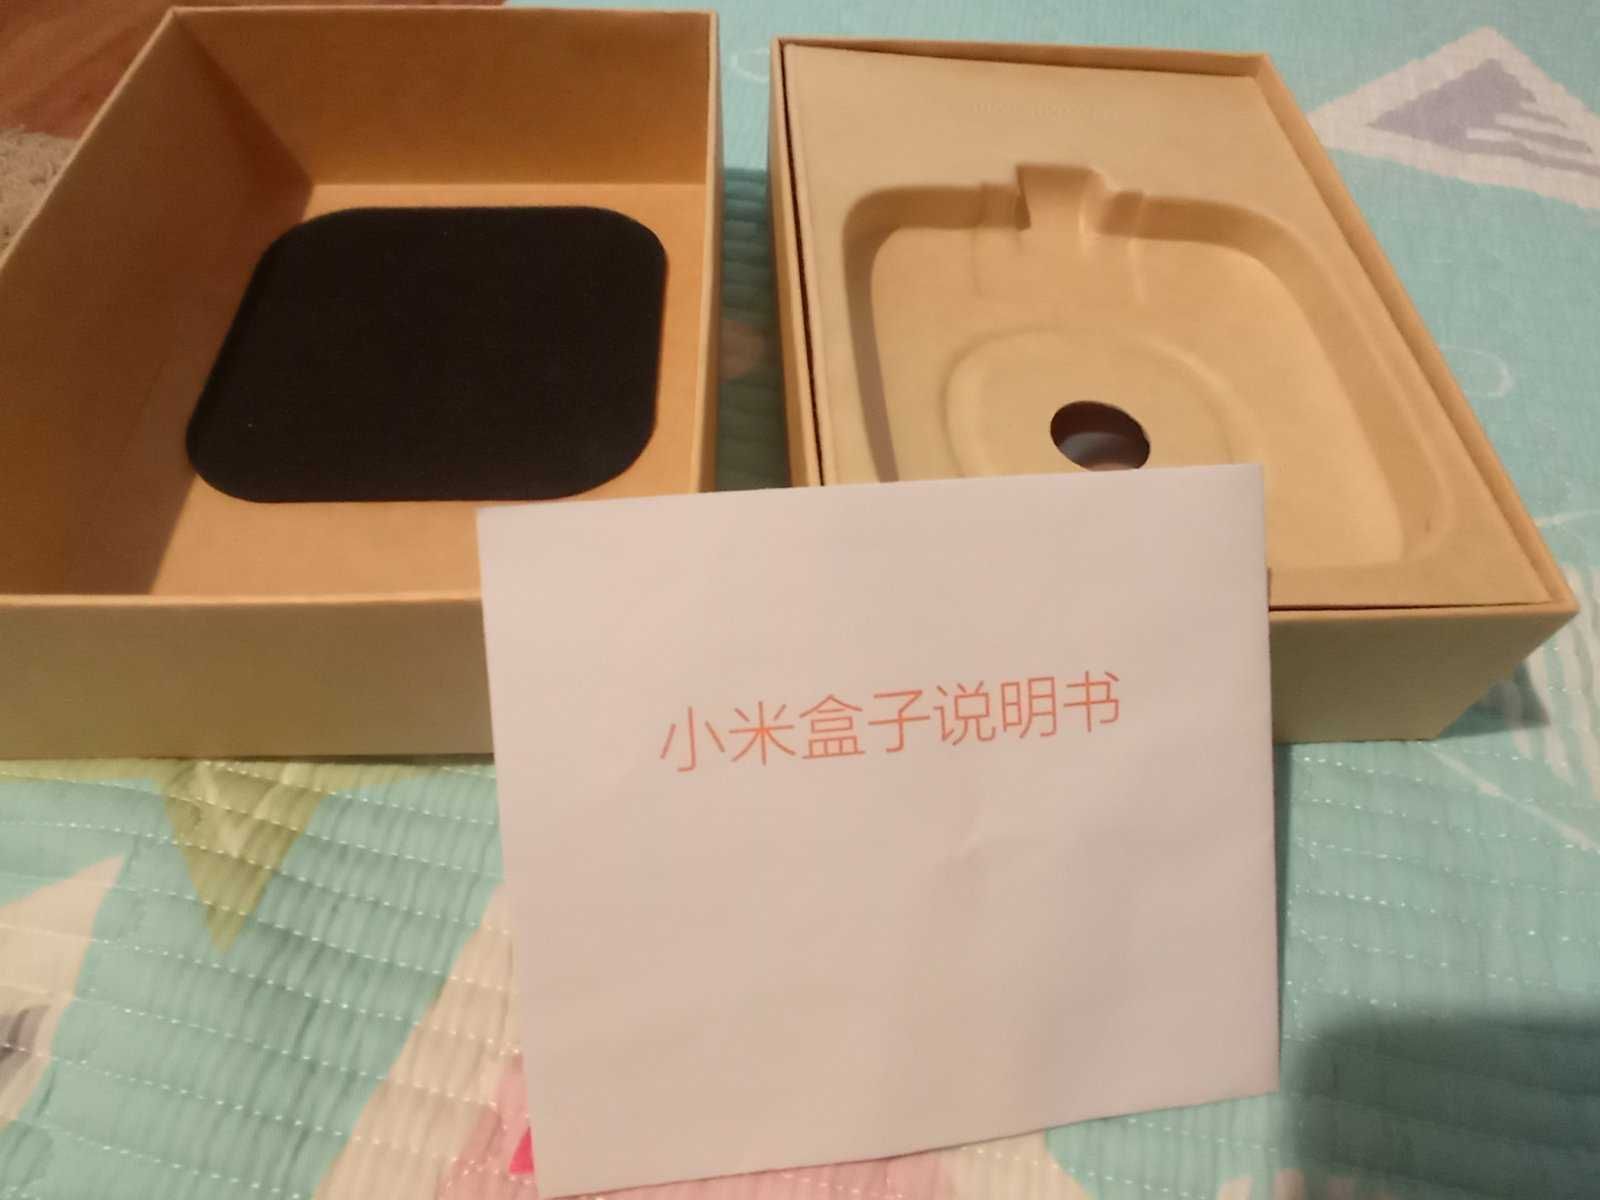 Xiaomi TV box MDZ-16AA (Mi TV box)